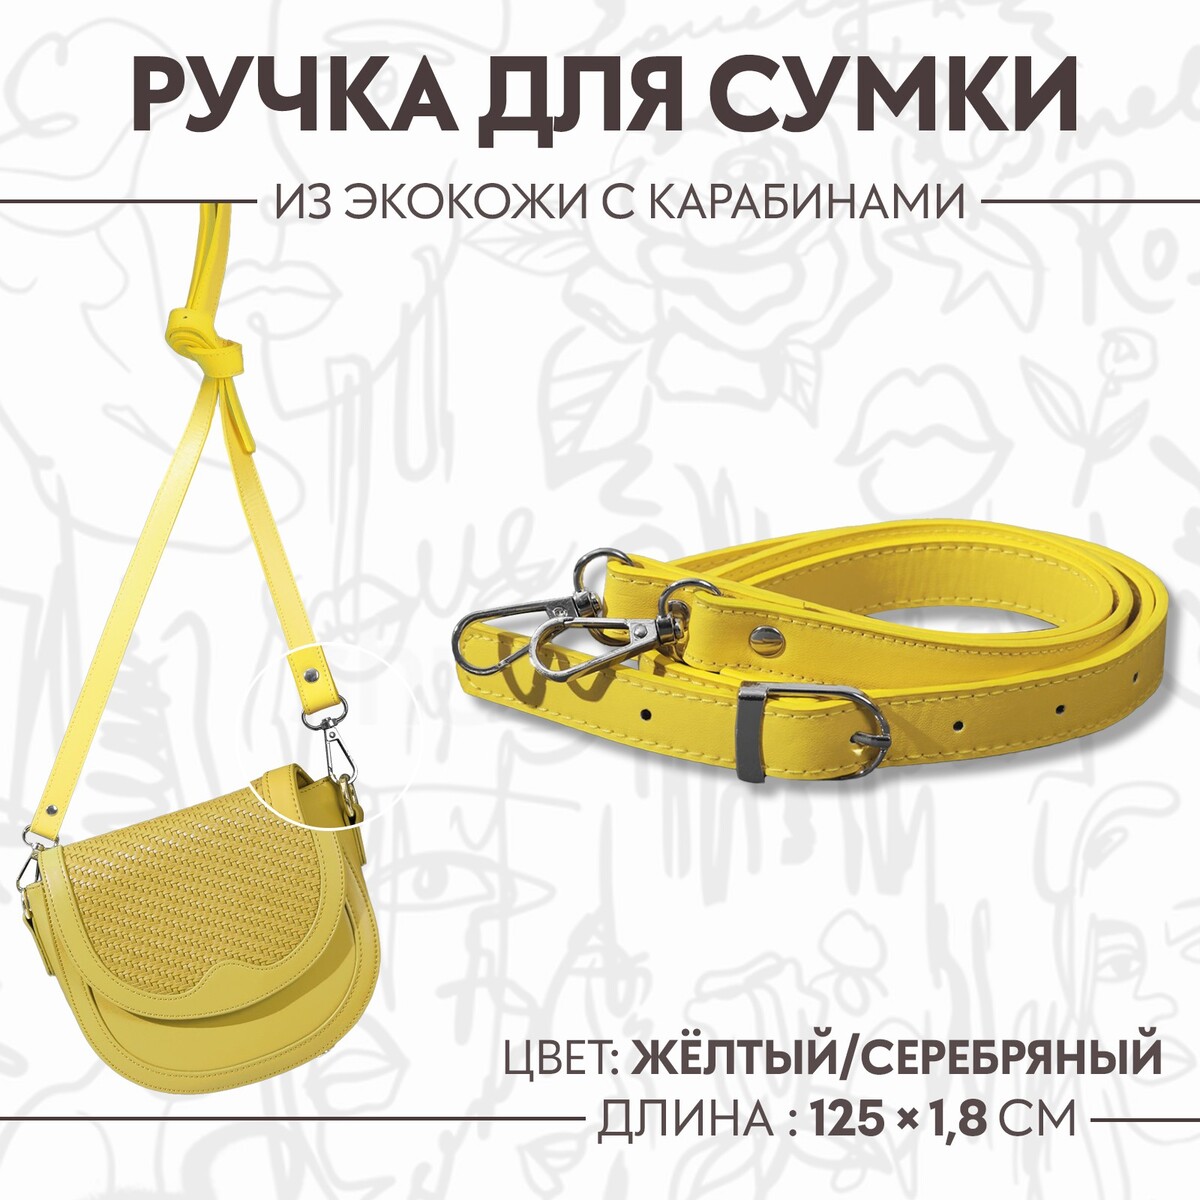 Ручка для сумки из экокожи, с карабинами, 125 × 1,8 см, цвет желтый